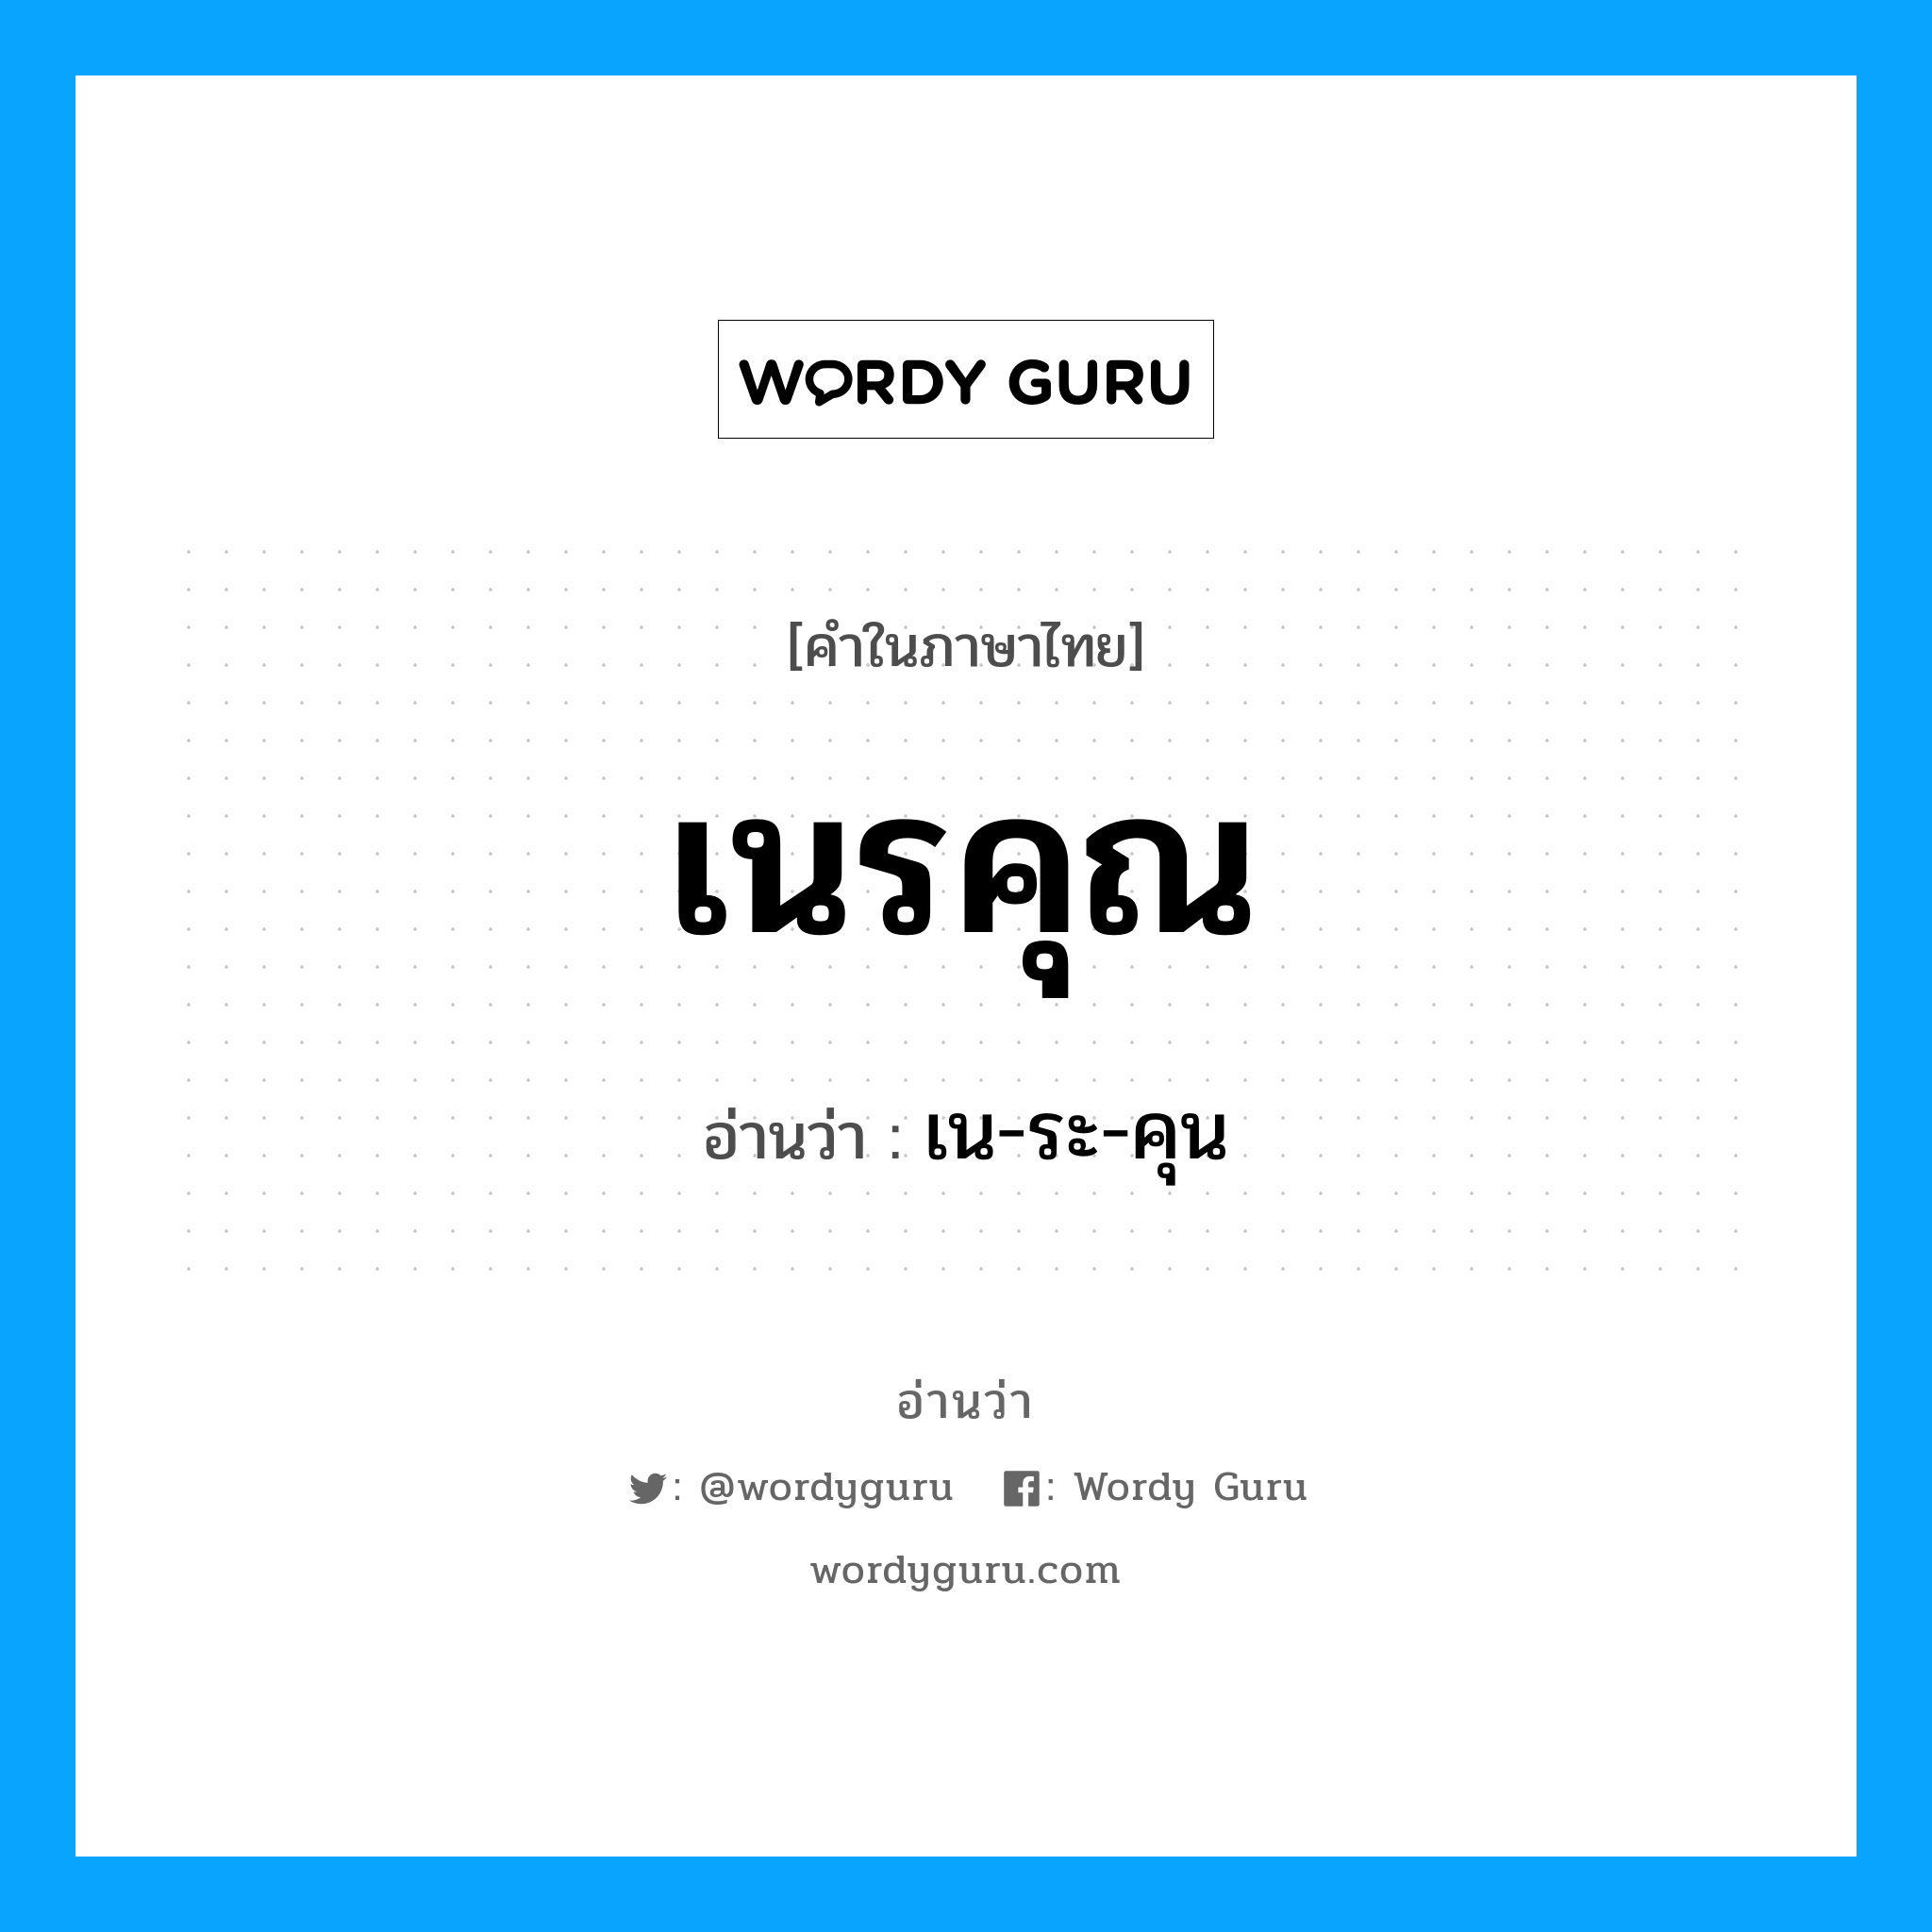 เน-ระ-คุน เป็นคำอ่านของคำไหน?, คำในภาษาไทย เน-ระ-คุน อ่านว่า เนรคุณ